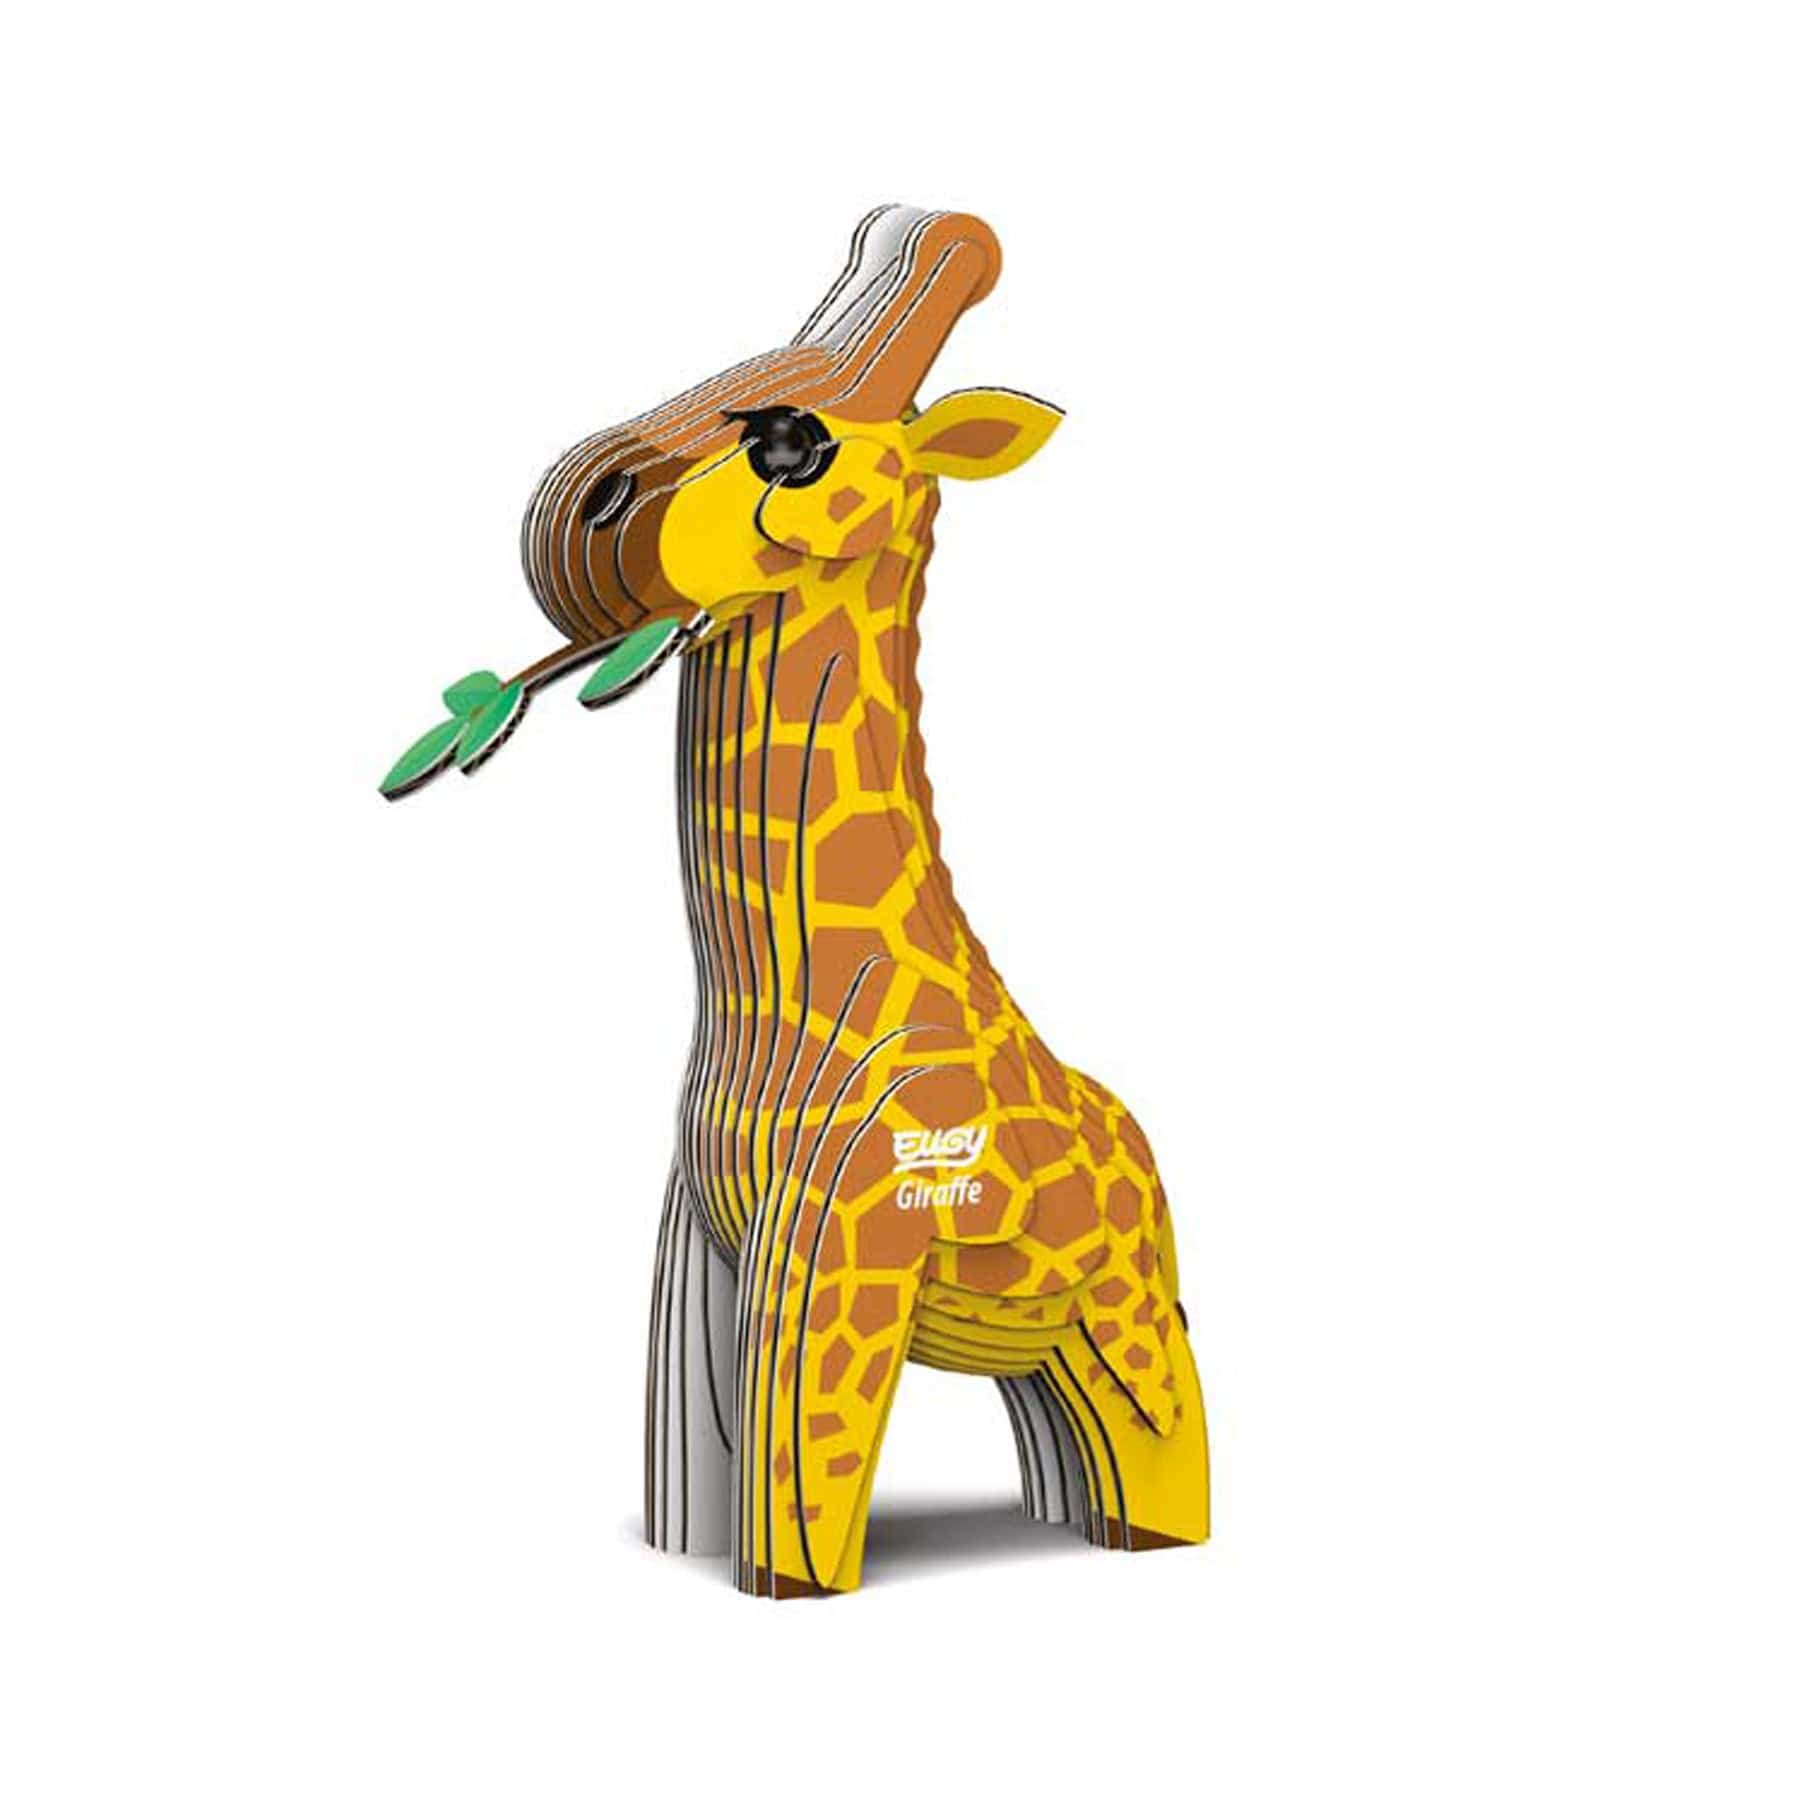 Giraffe 3D model kit